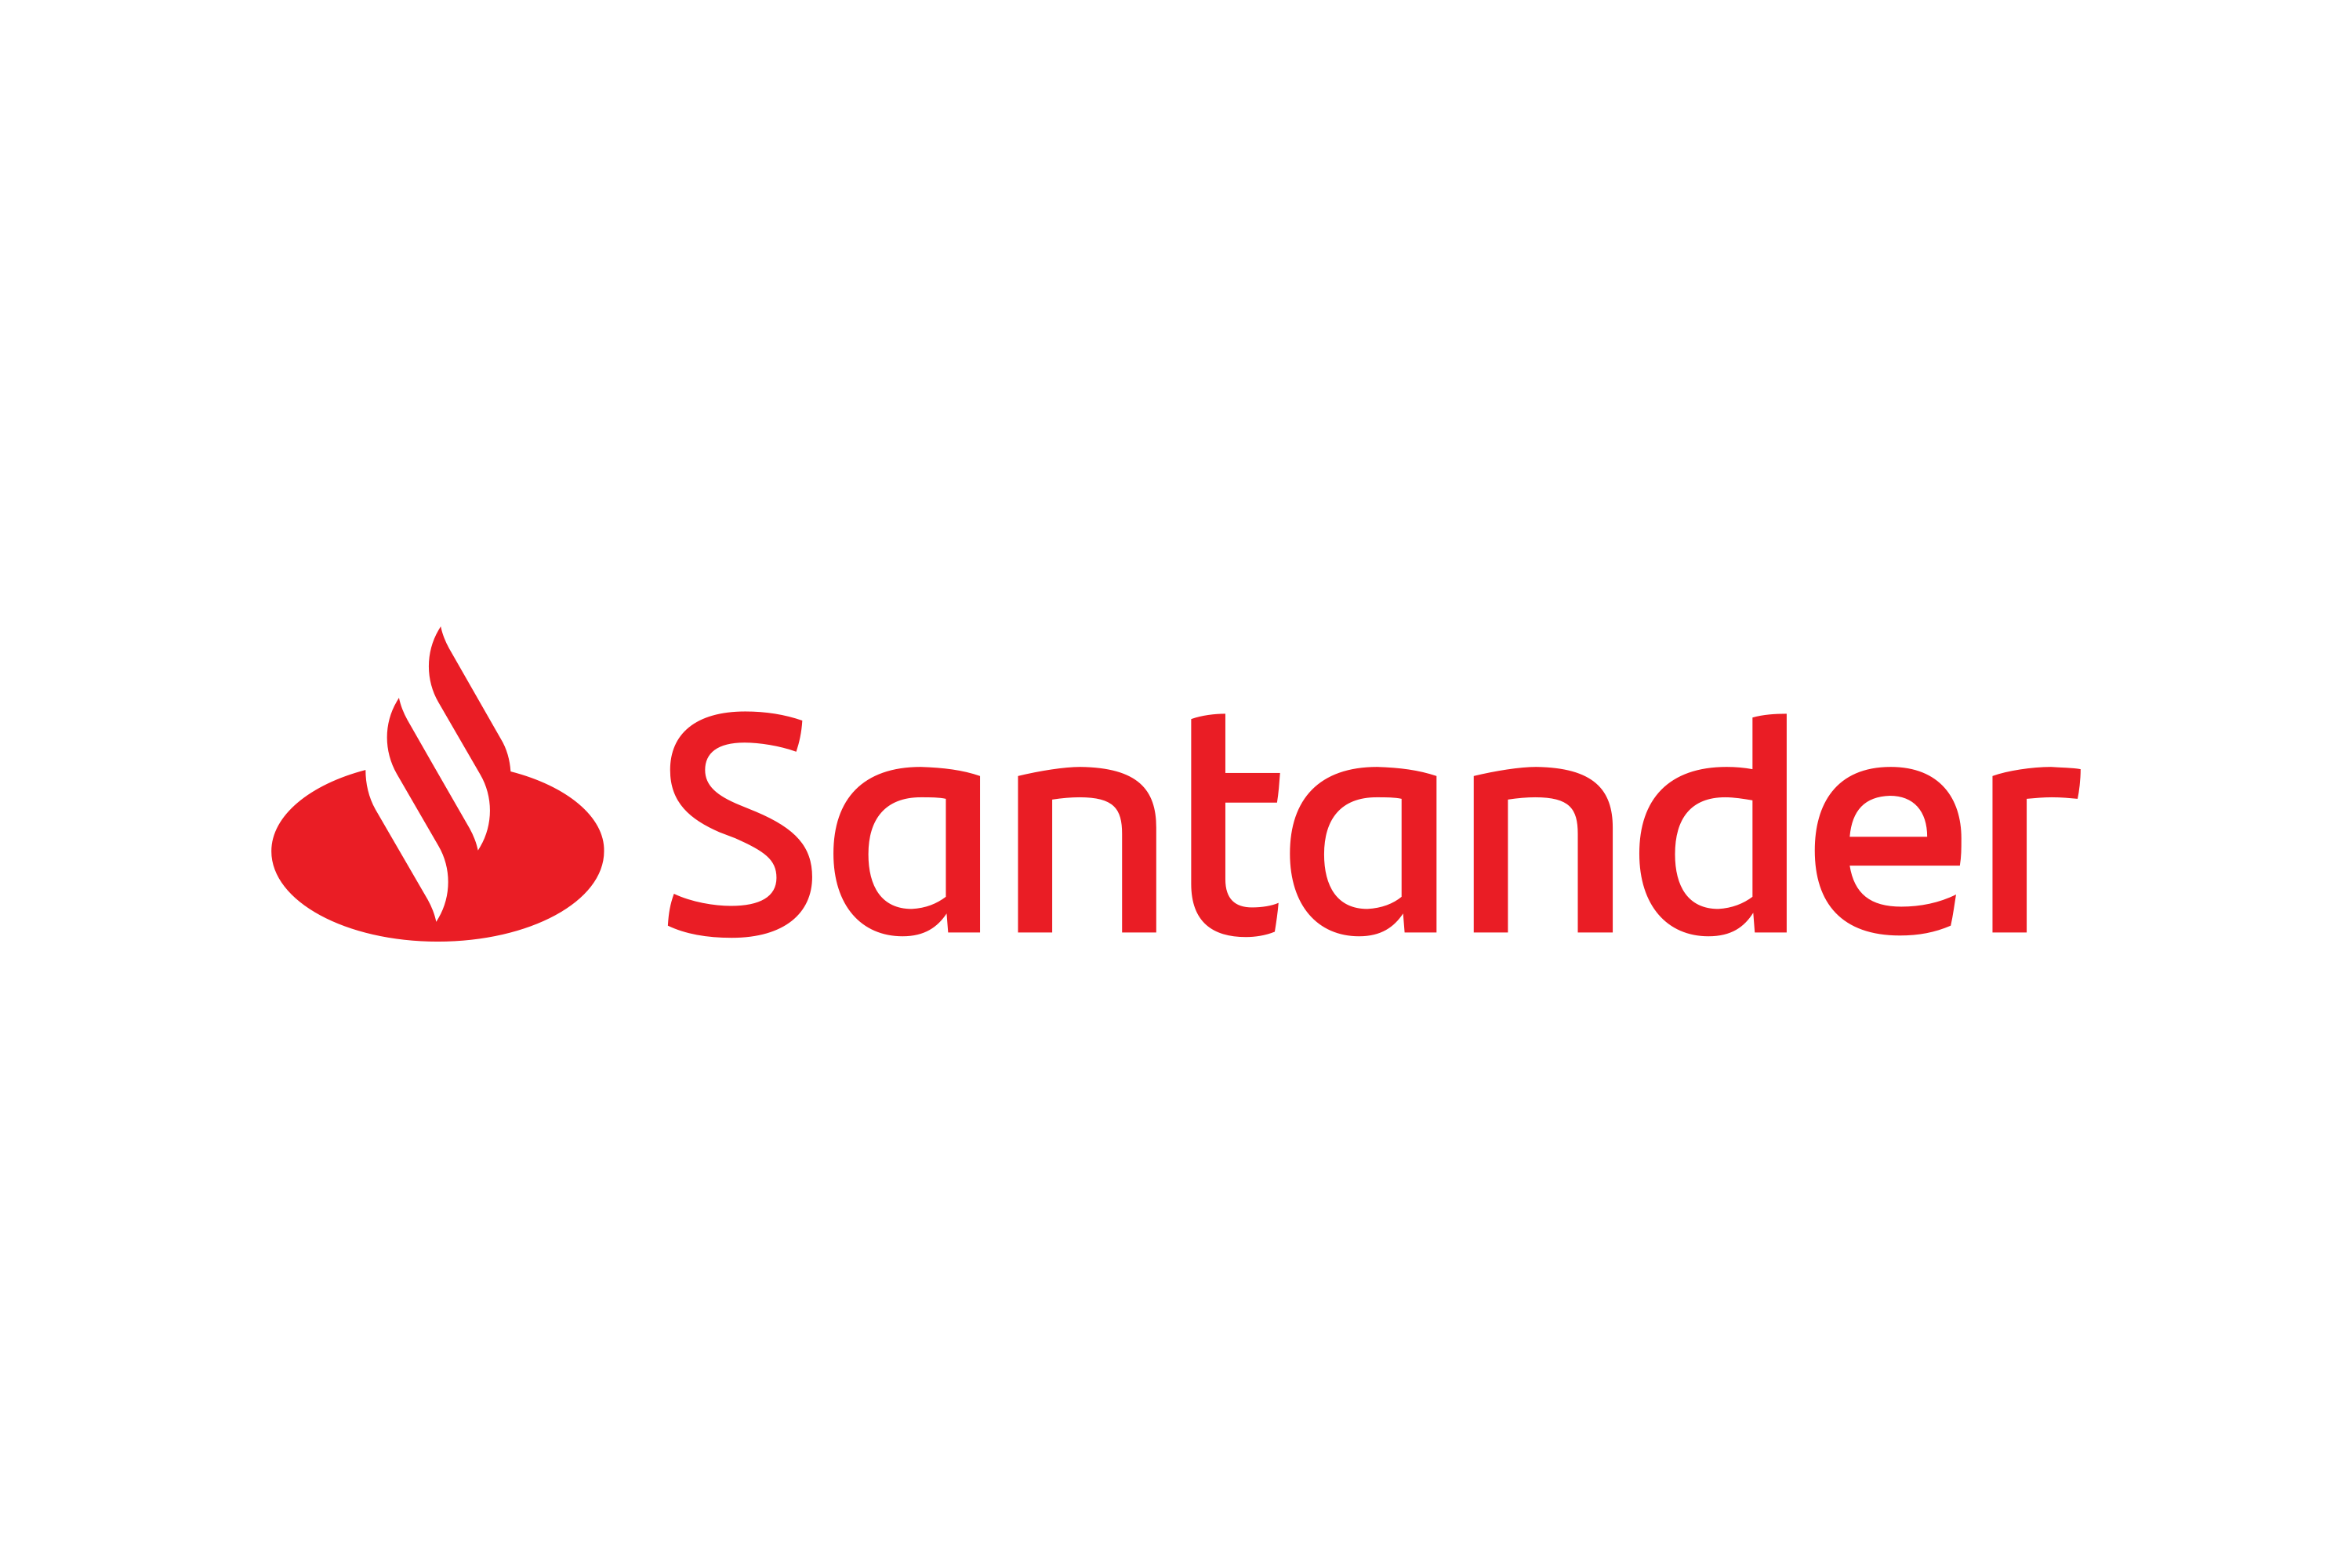 Santander Bank Logo